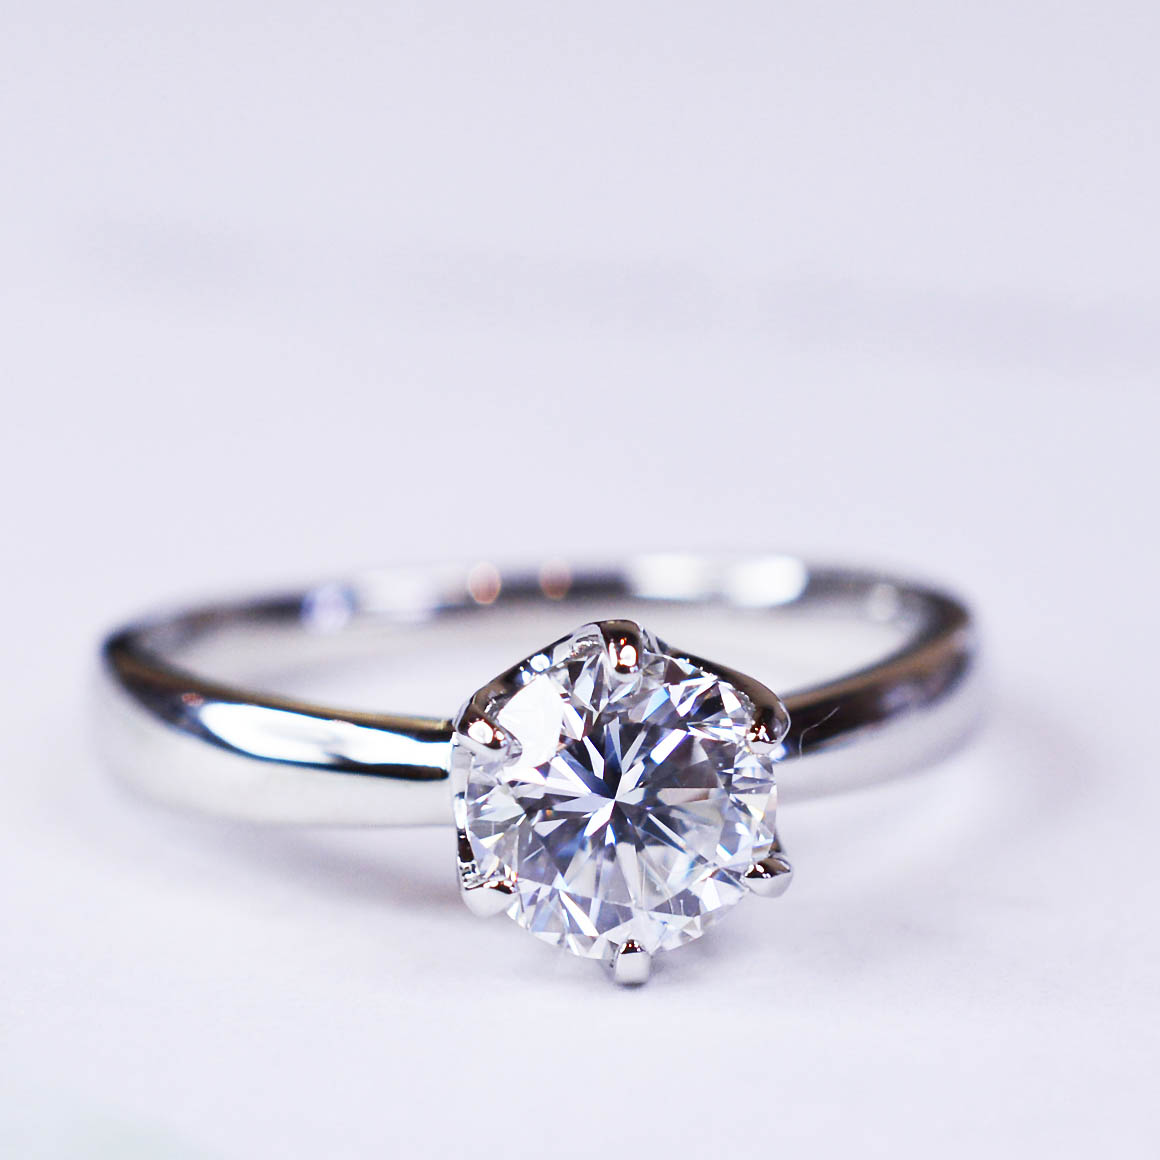 ダイヤの持ち込みも可能です@手作り結婚指輪 工房スミス札幌店